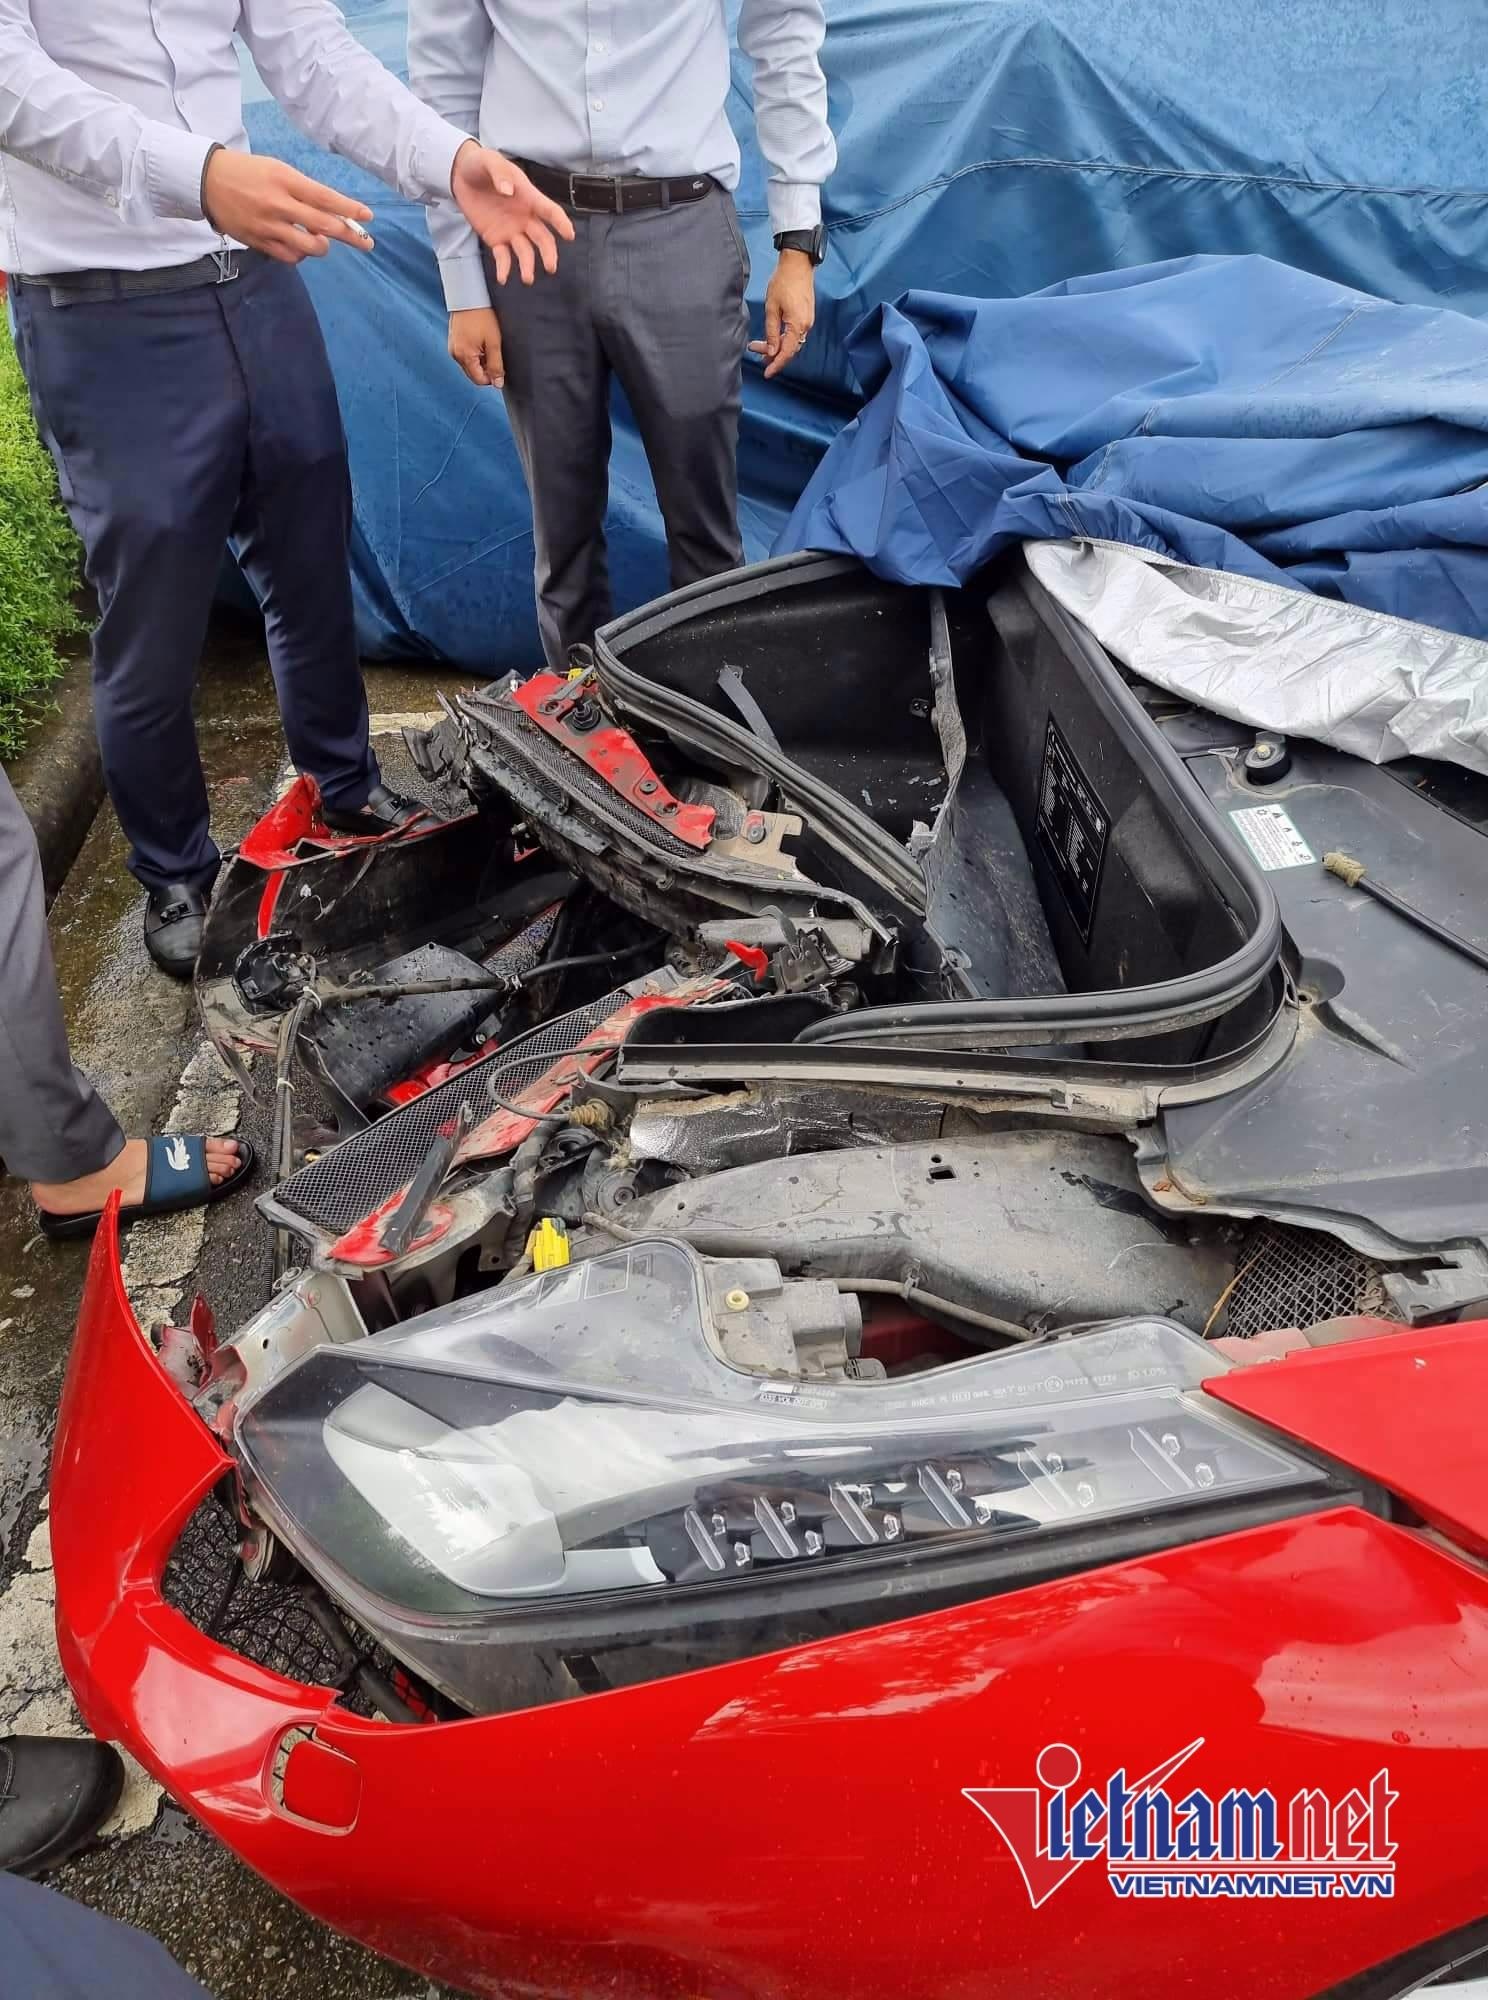 Chủ siêu xe gặp nạn: Khó chấp nhận cách ứng xử của Volvo Hà Nội và Ferrari Việt Nam - 4